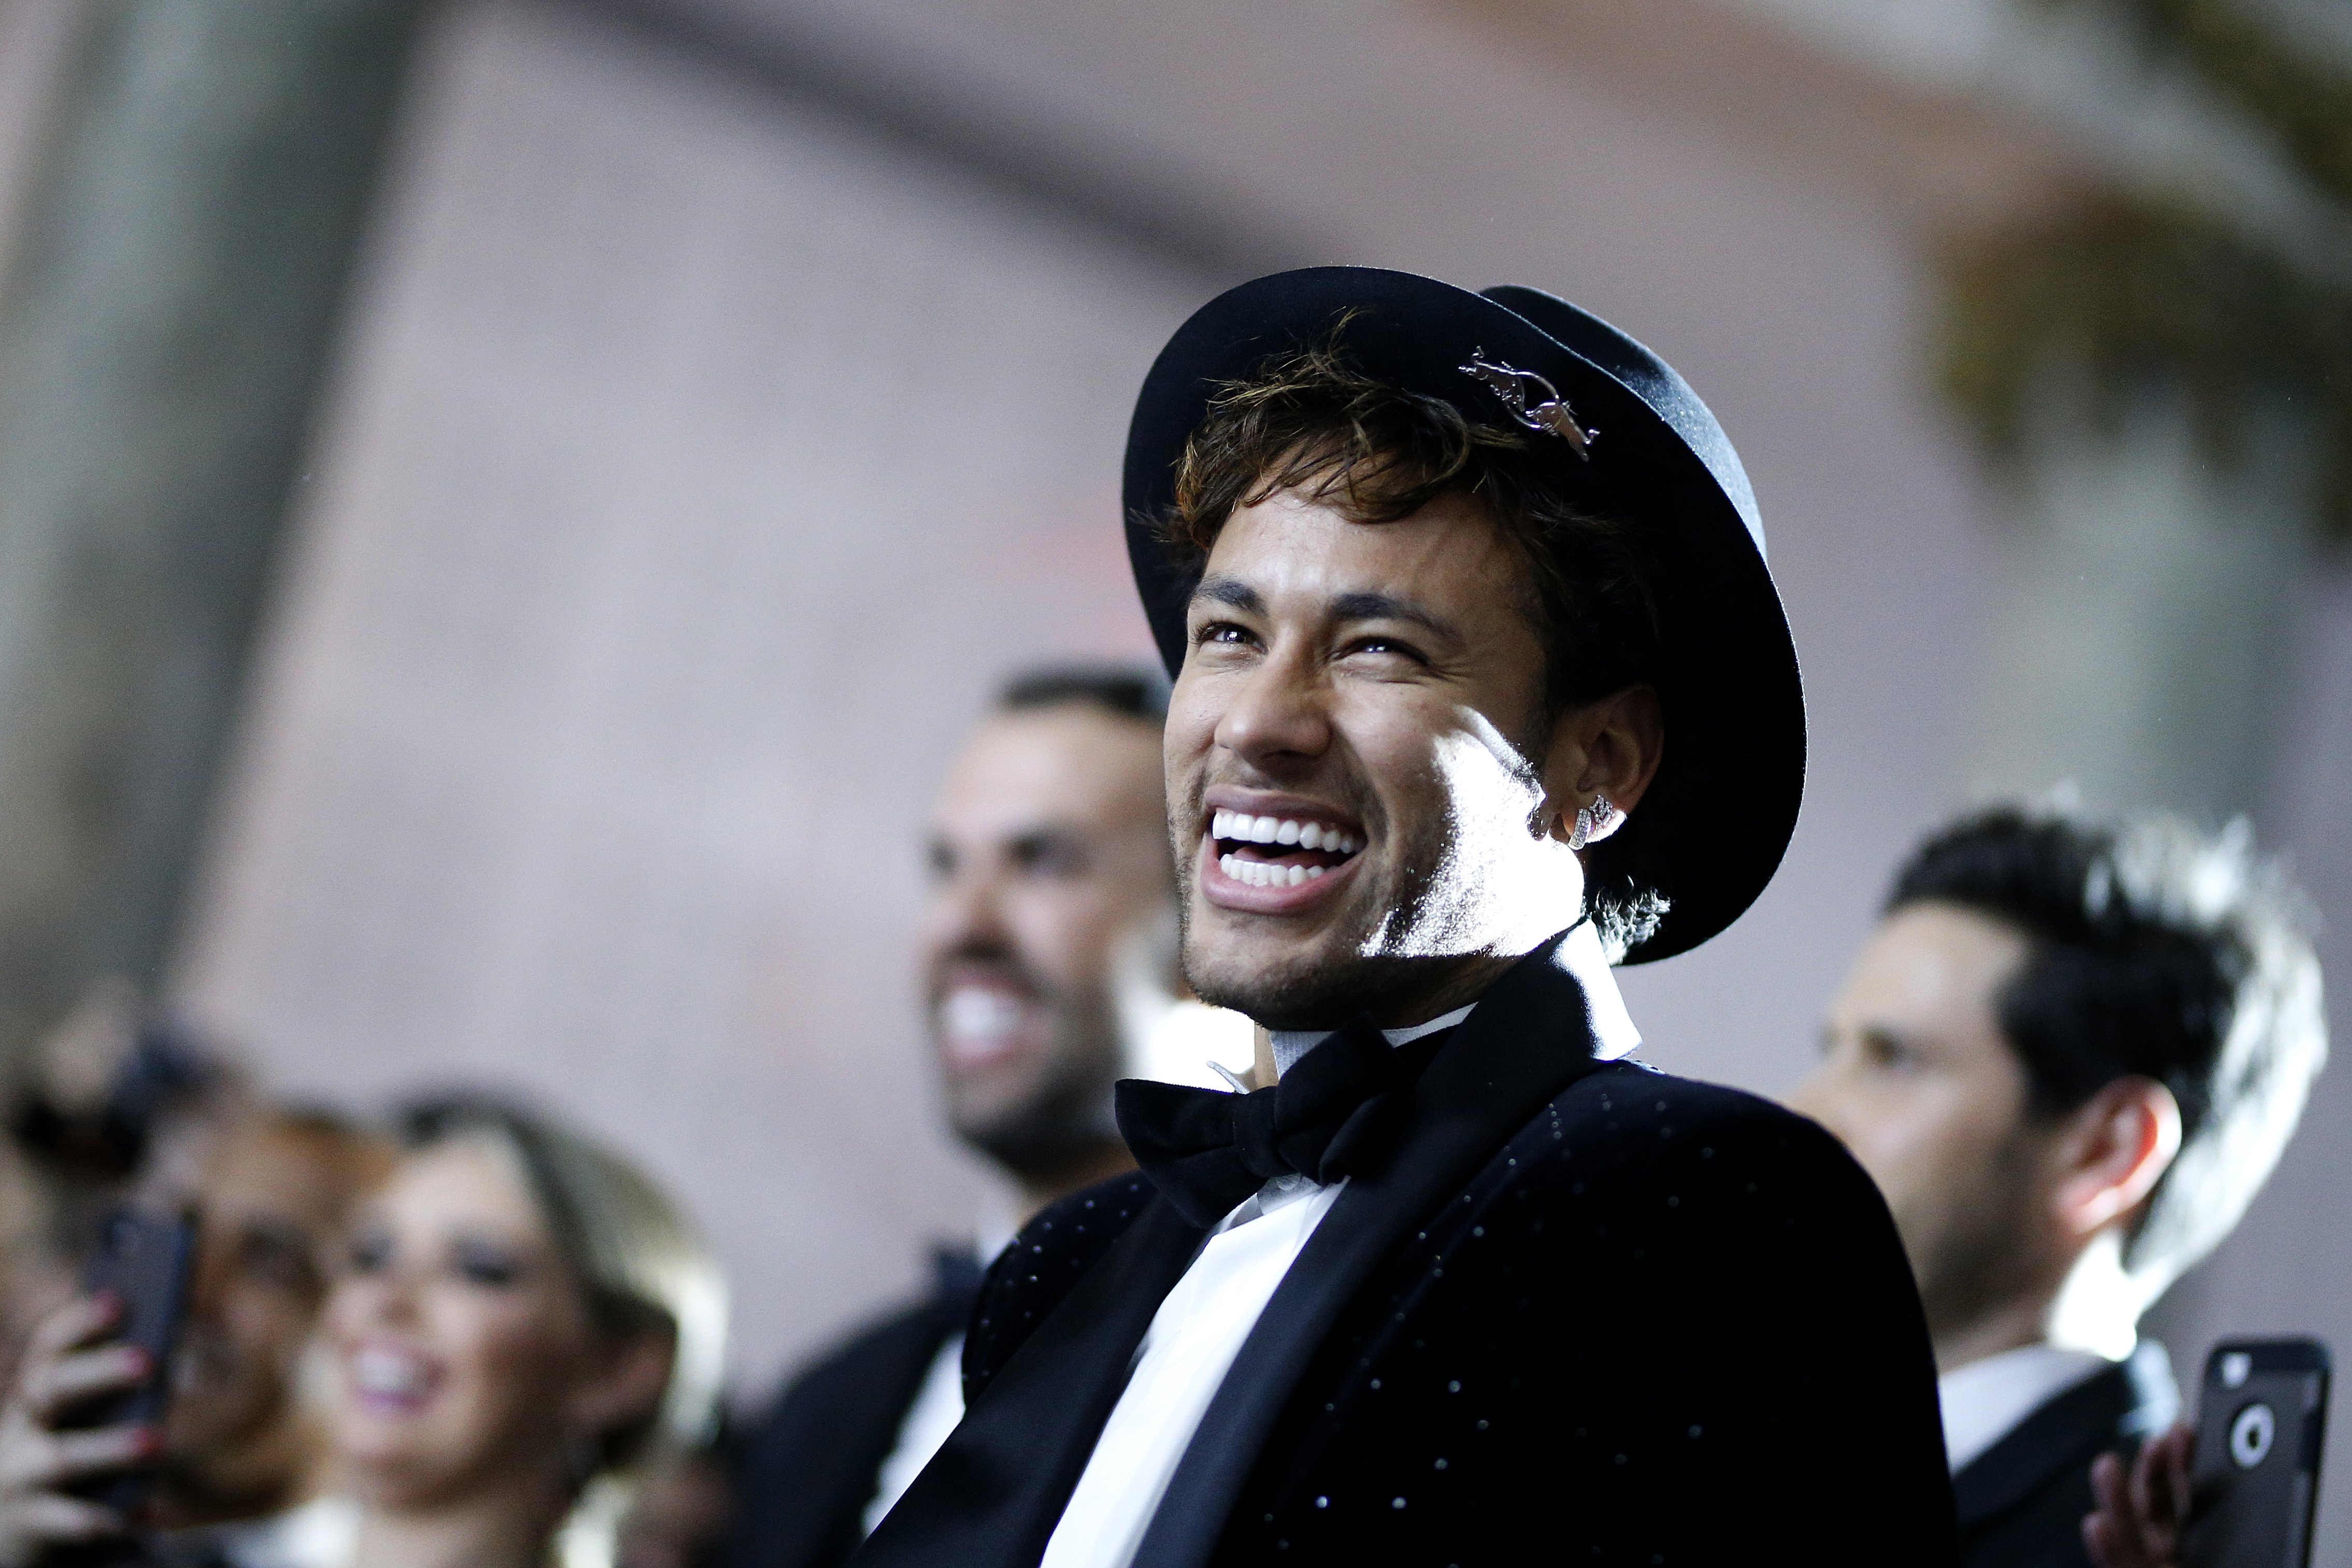 Vídeo: Neymar aprofita les vacances per riure dels que l'acusen d'exagerar les faltes